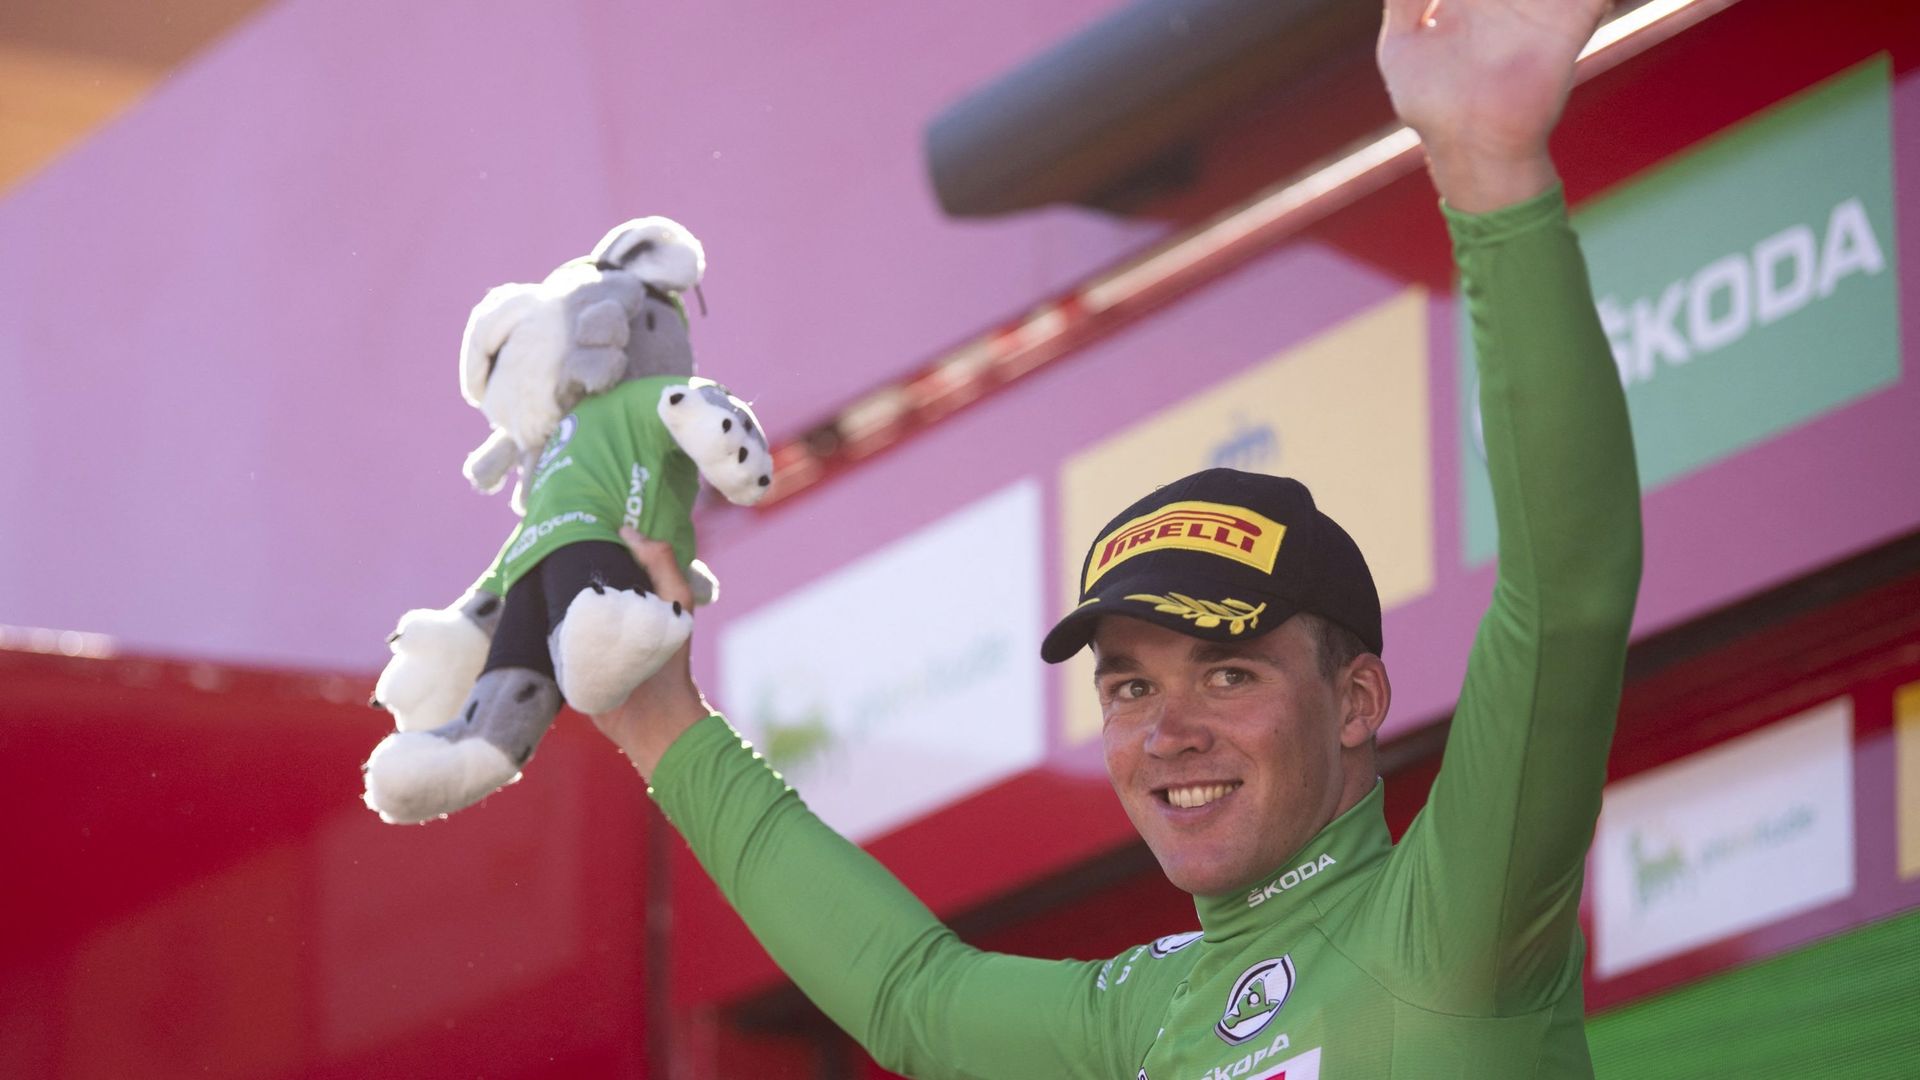 Trois fois deuxième durant la première semaine de course, Mads Pedersen (Trek-Segafredo) a cette fois décroché une victoire d’étape dans la Vuelta en s’adjugeant la 13e étape du Tour d’Espagne vendredi à Montilla, où il s’est imposé au sprint devant le Fr